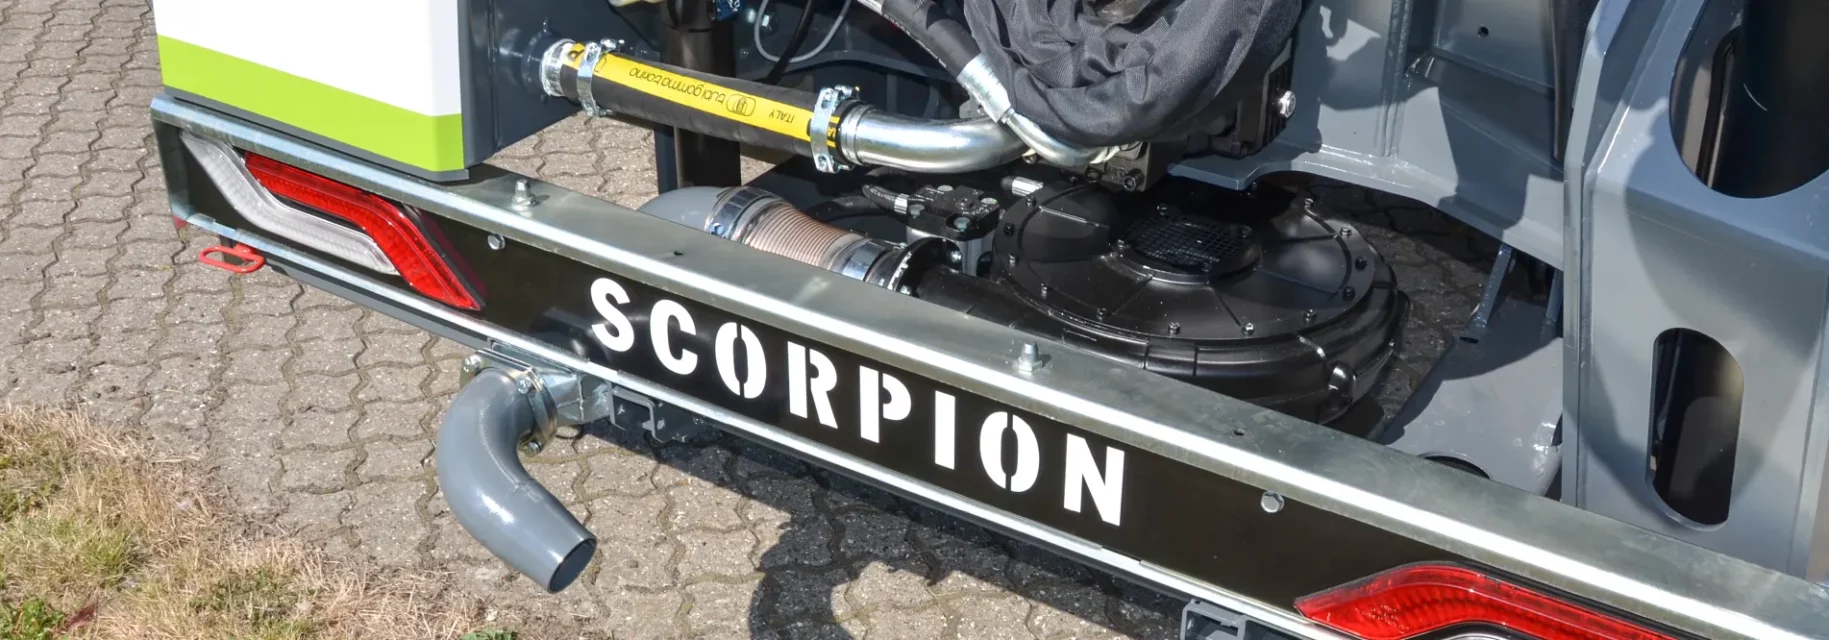 Le souffleur de débris peut être intégré à nos épareuses Scorpion